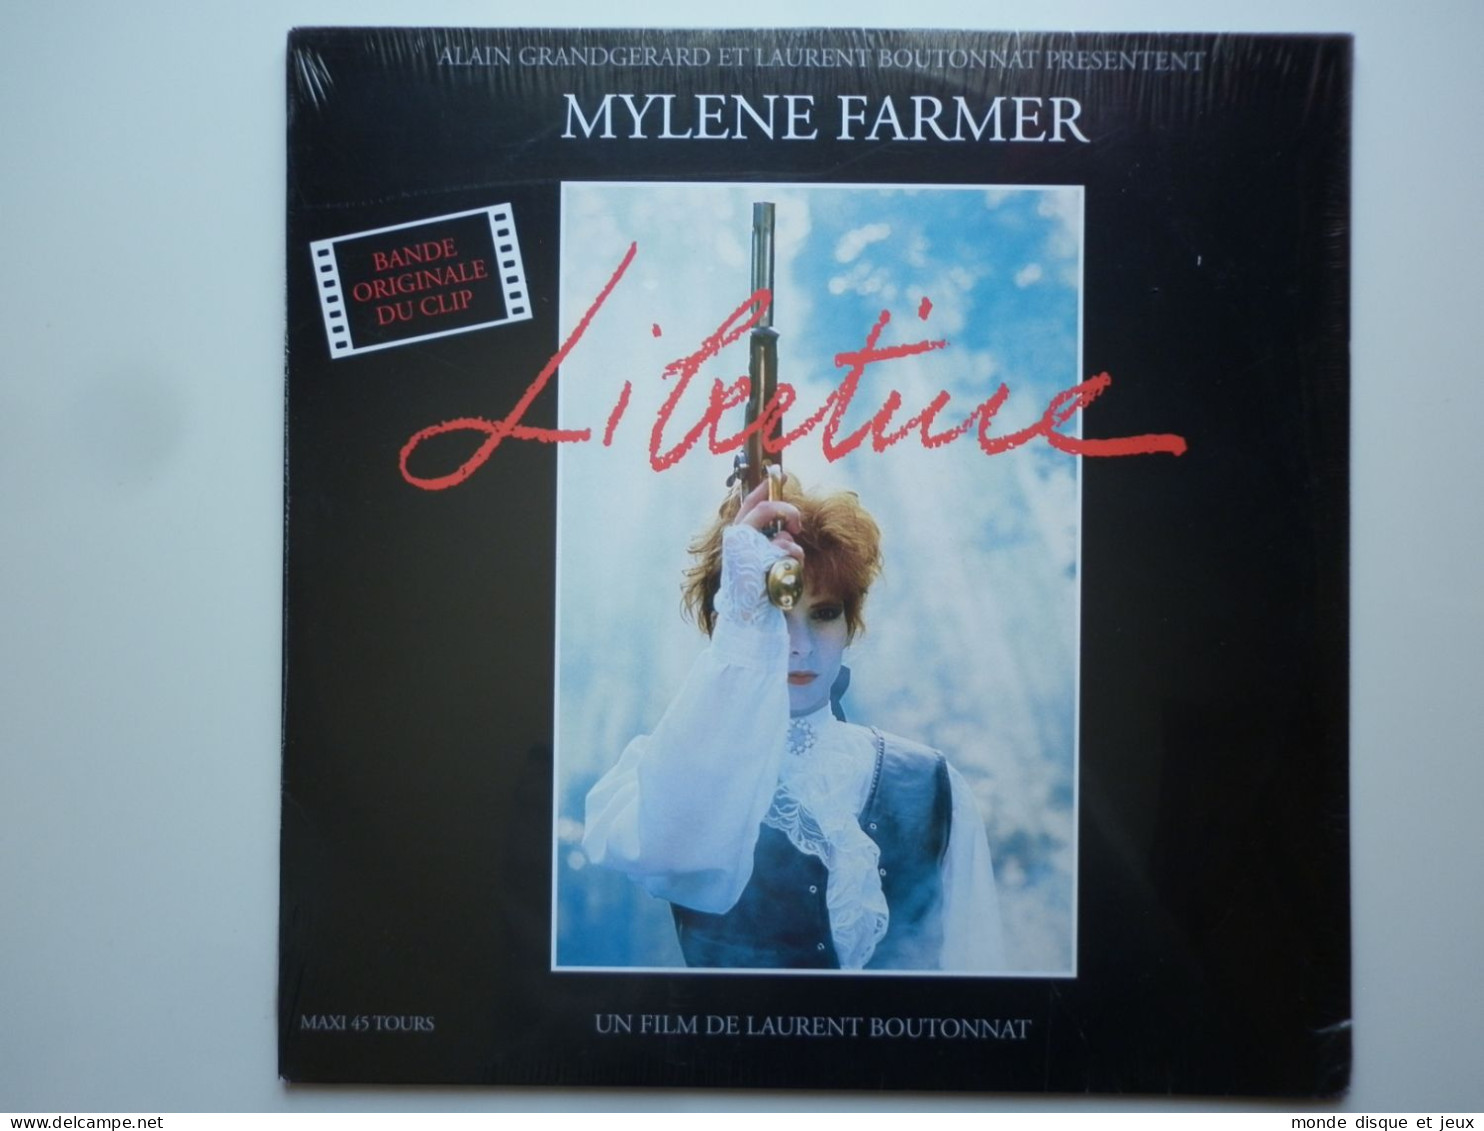 Mylene Farmer Maxi 45Tours Vinyle Libertine Bande Original Du Clip Exclusivité Couleur Rouge - 45 Rpm - Maxi-Single